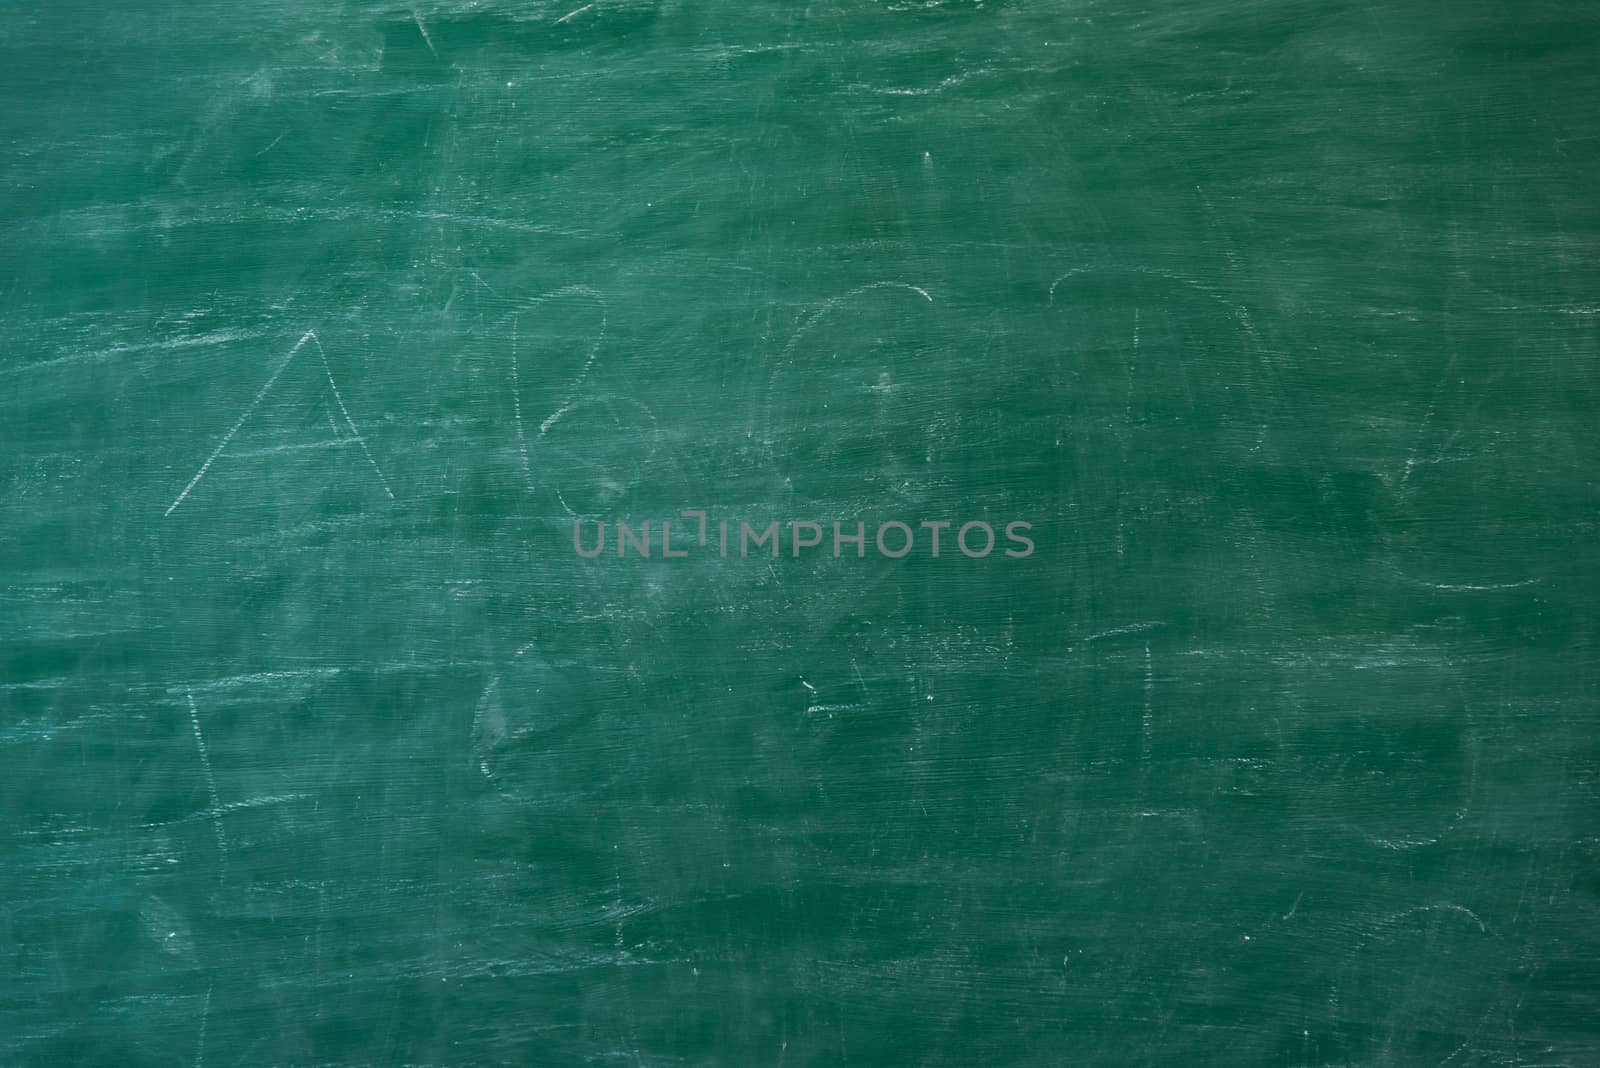 Blackboard or chalkboard texture background by Sorapop